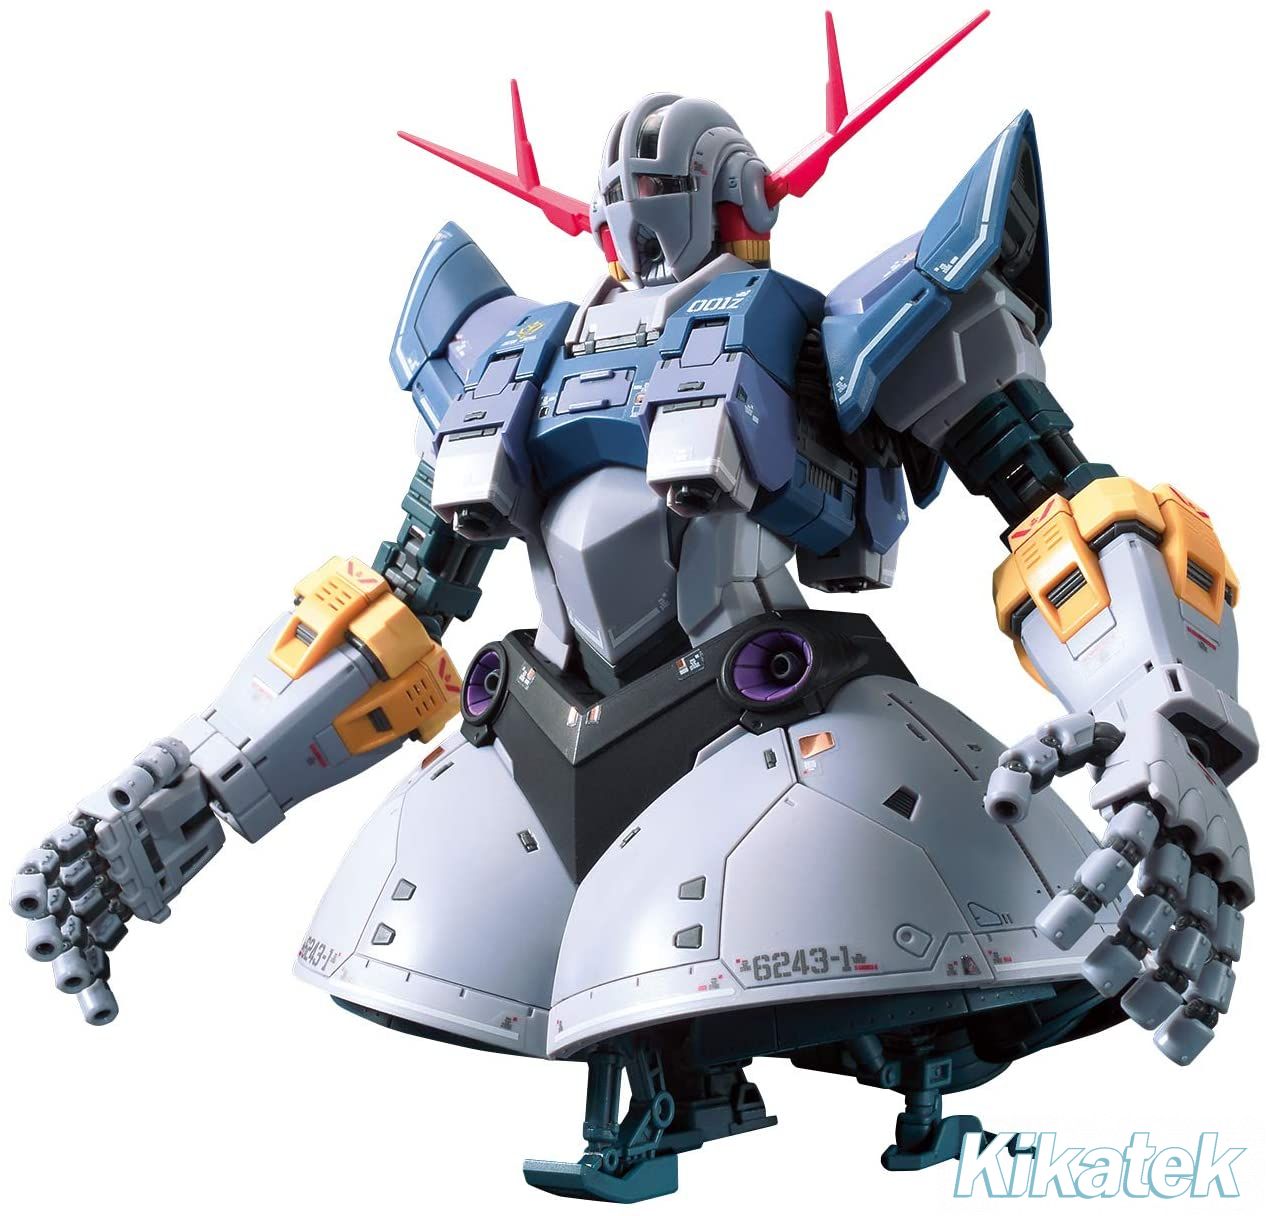 RG Zeong (Mobile Suite Gundam): Kikatek UK